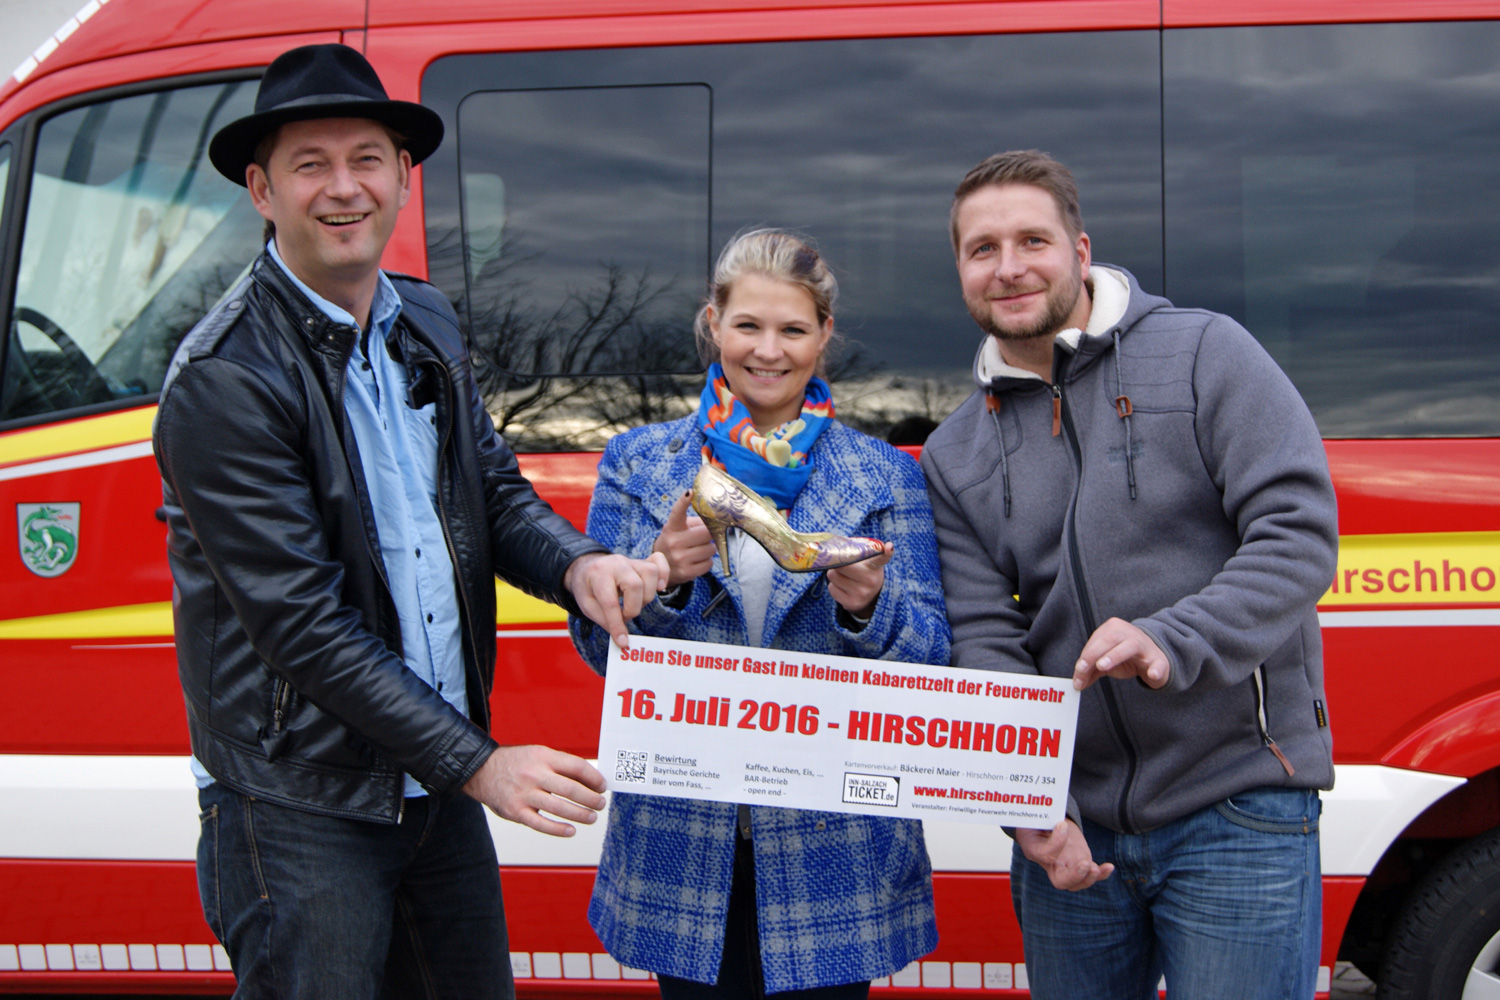 Die drei Akteure von Oschnputtl - Tom Bauer, Eva Petzenhauser und Sebastian Hagengruber - freuen sich schon auf ihren Auftritt bei der Feuerwehr Hirschhorn am 16. Juli 2016